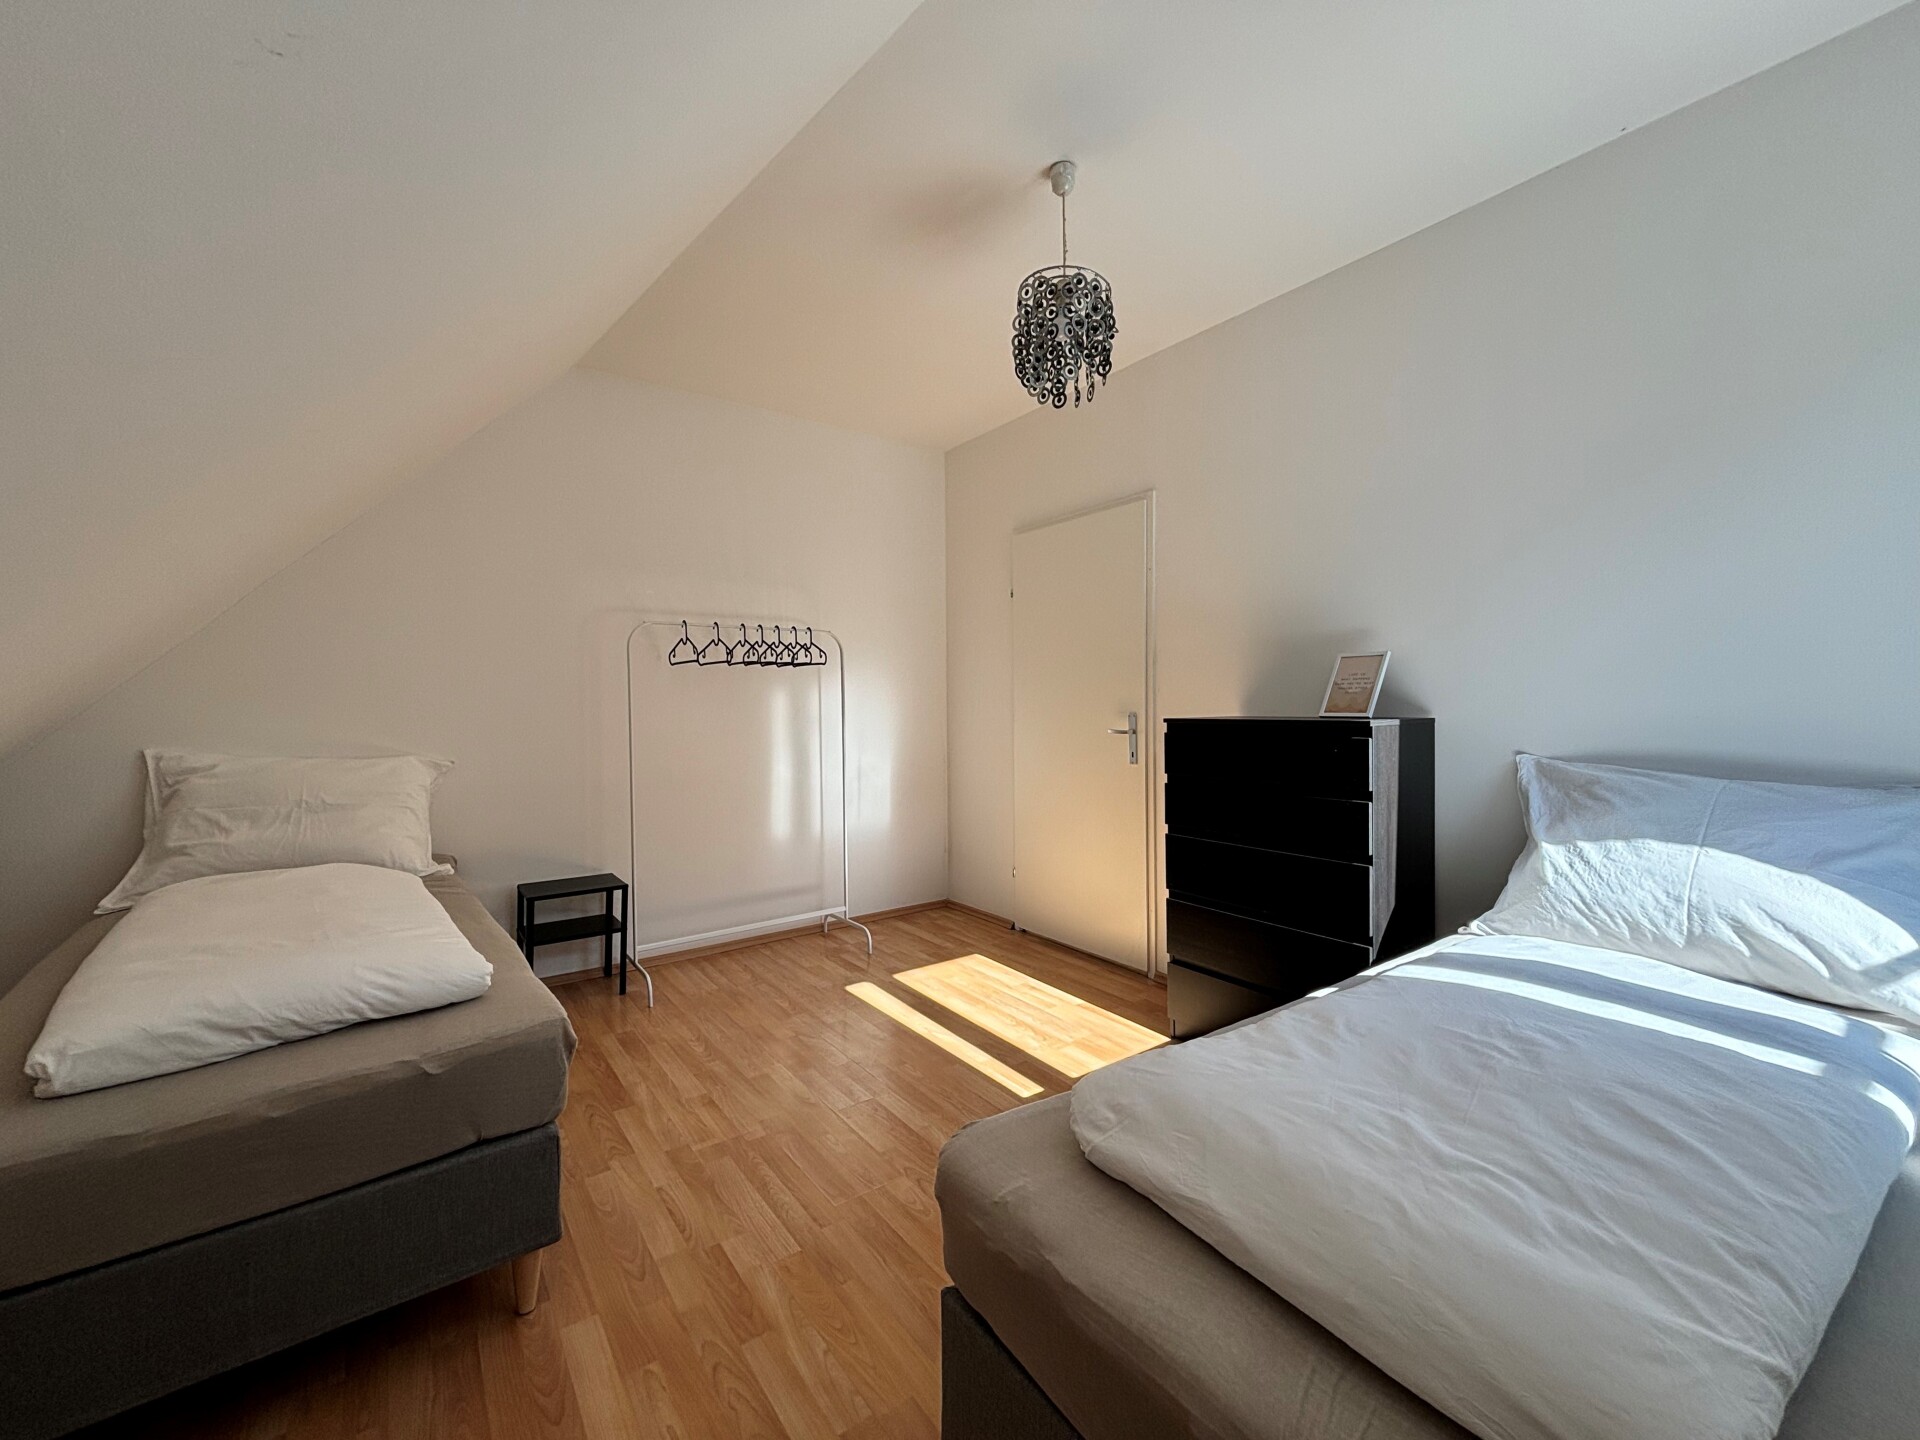 Apartment Gemütliche Wohnung nahe Voestalpine, gratis Parkplatz, Wifi, ... Peter Holzner 4030 Linz 1716272418664c3d22869fe